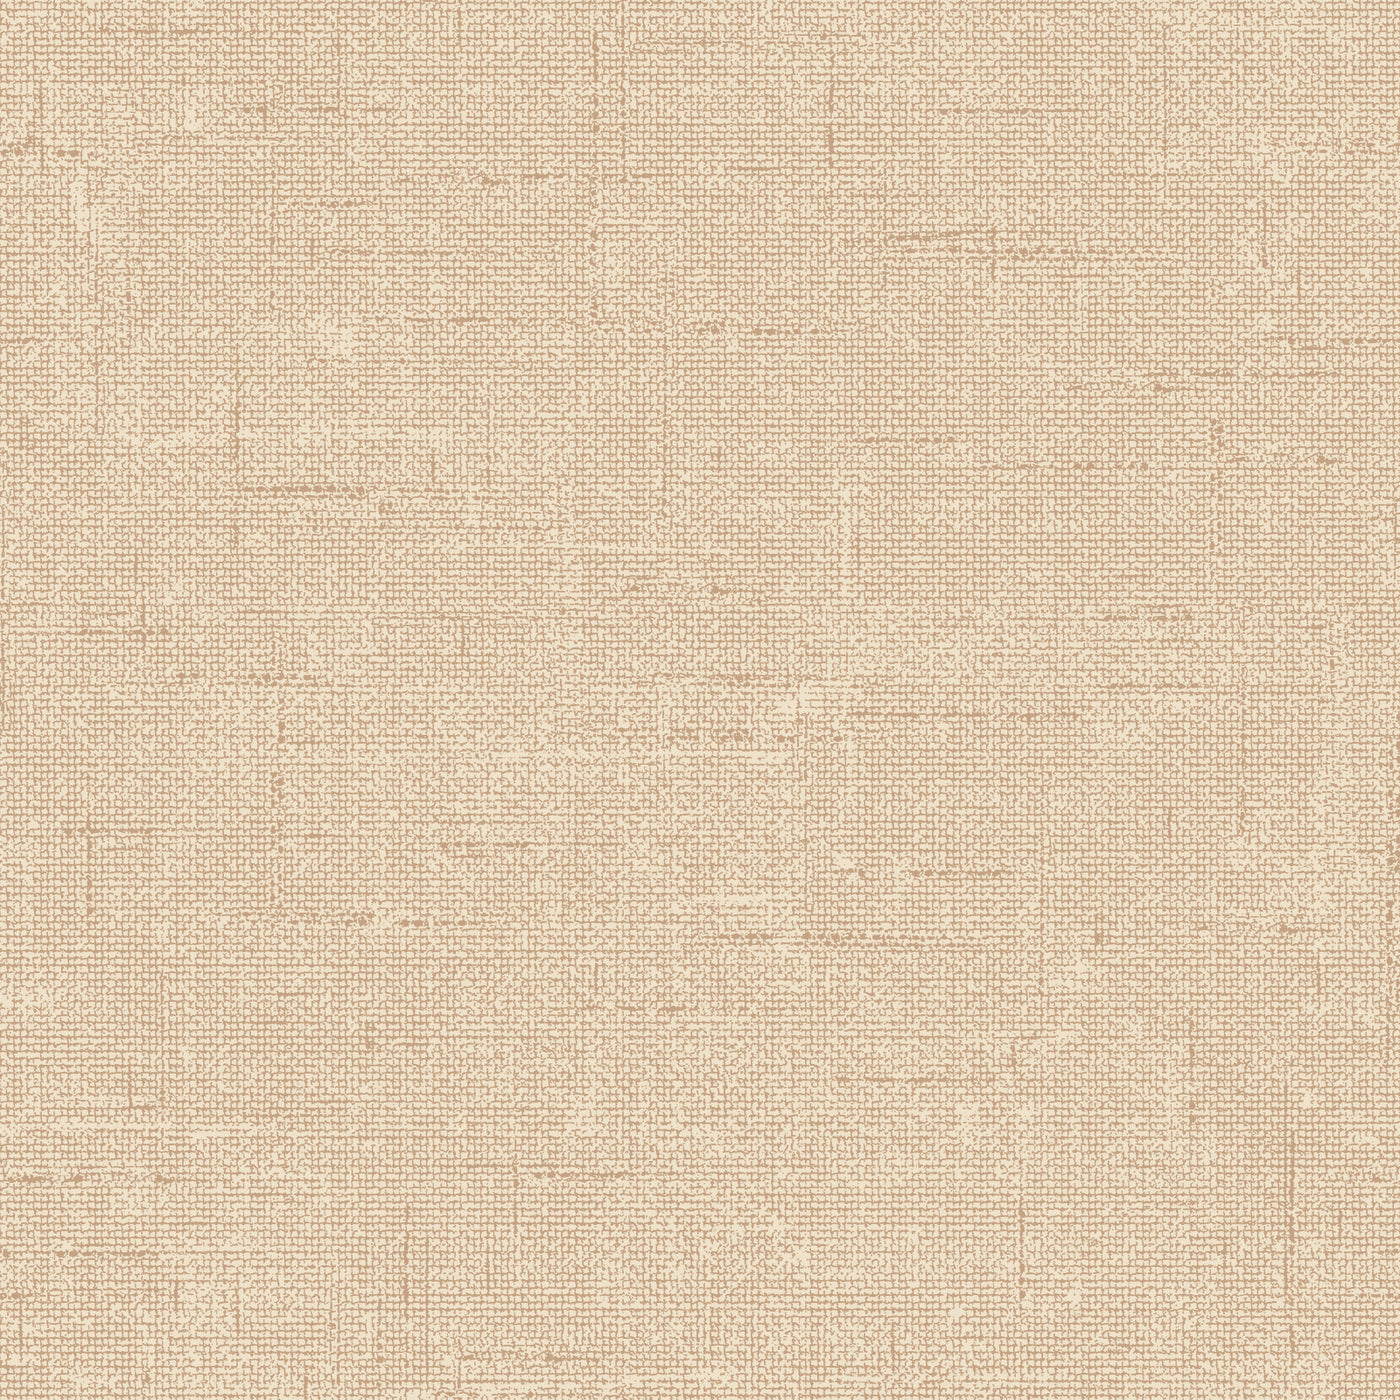 Burlap Removable Wallpaper - A swatch of Burlap Peel And Stick Wallpaper in natural burlap | Tempaper#color_natural-burlap